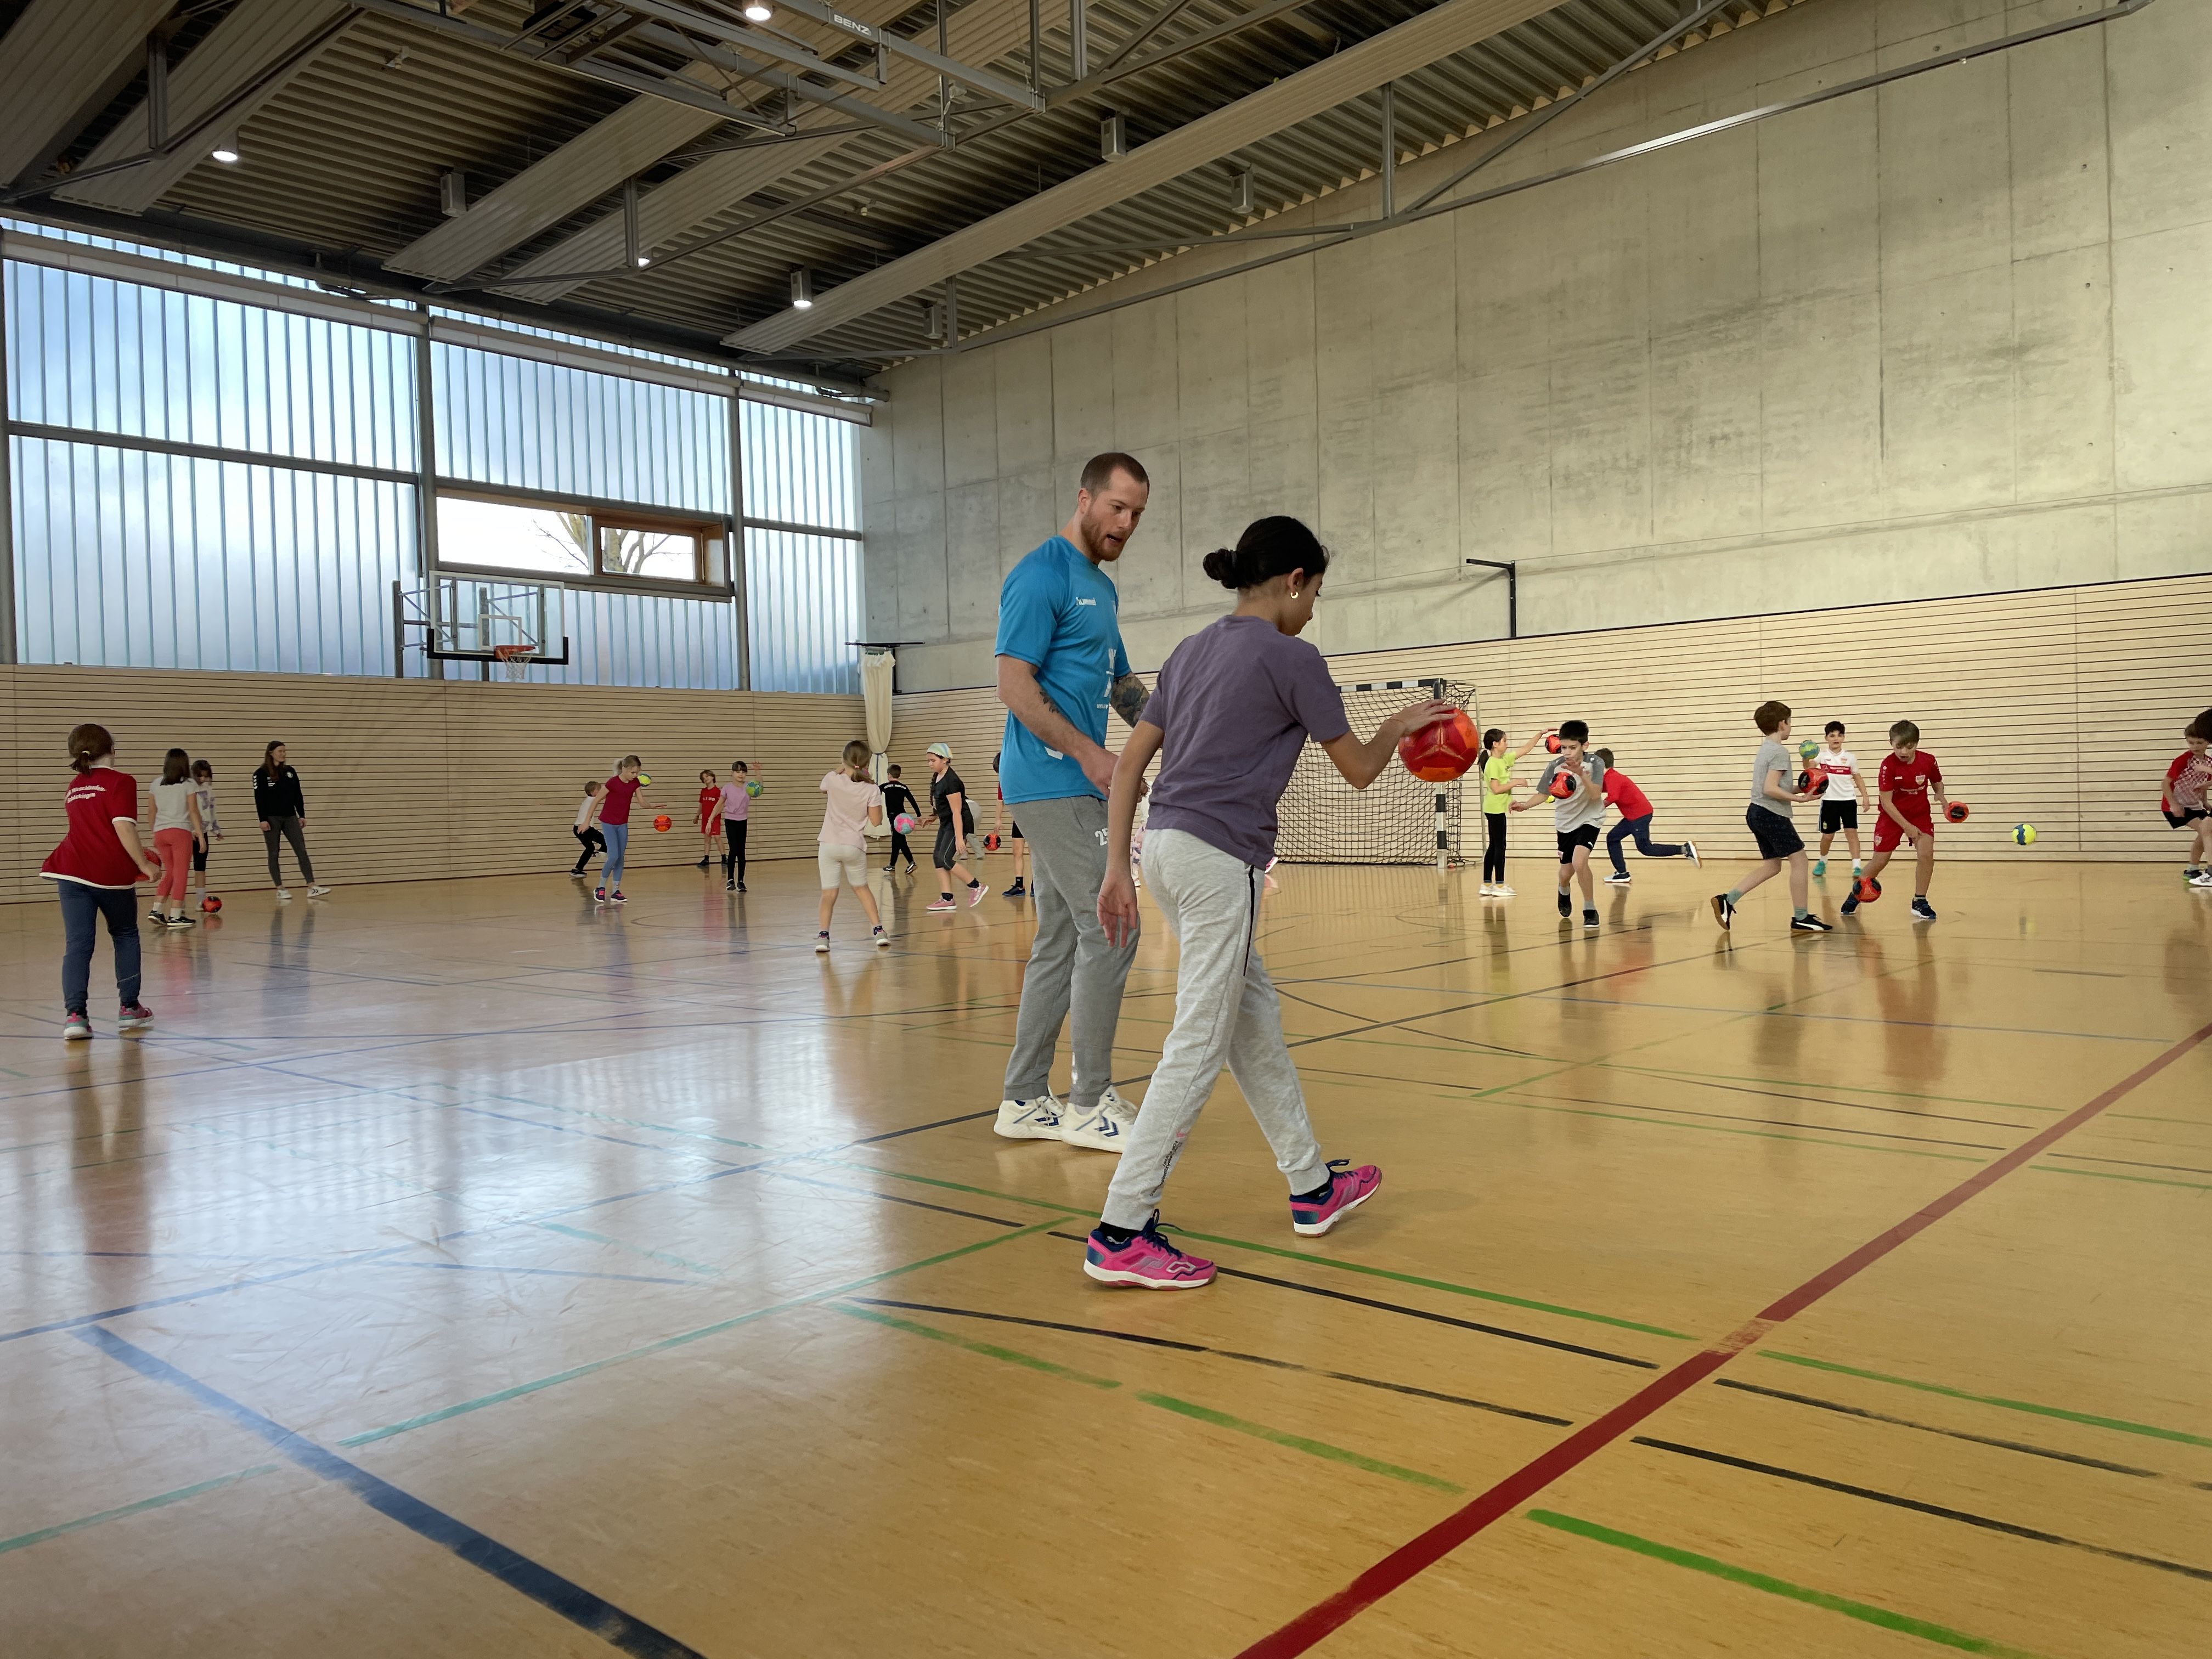 Im Vordergrund unterstützt ein Handballspieler ein Kind beim prellen. Im Hintergrund spielen Kinder mit dem Handball.